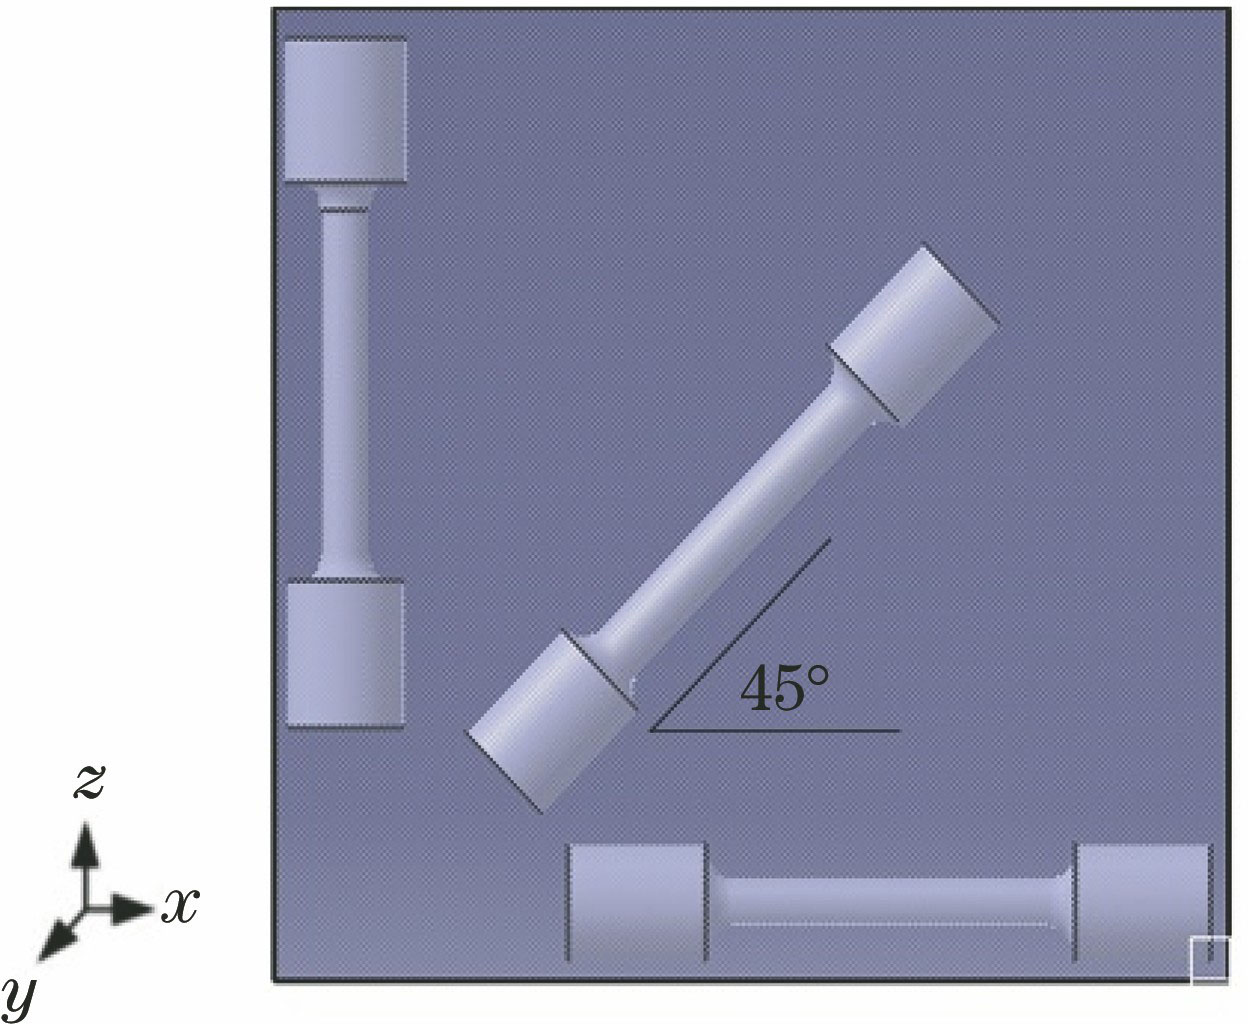 Diagram of sample orientation